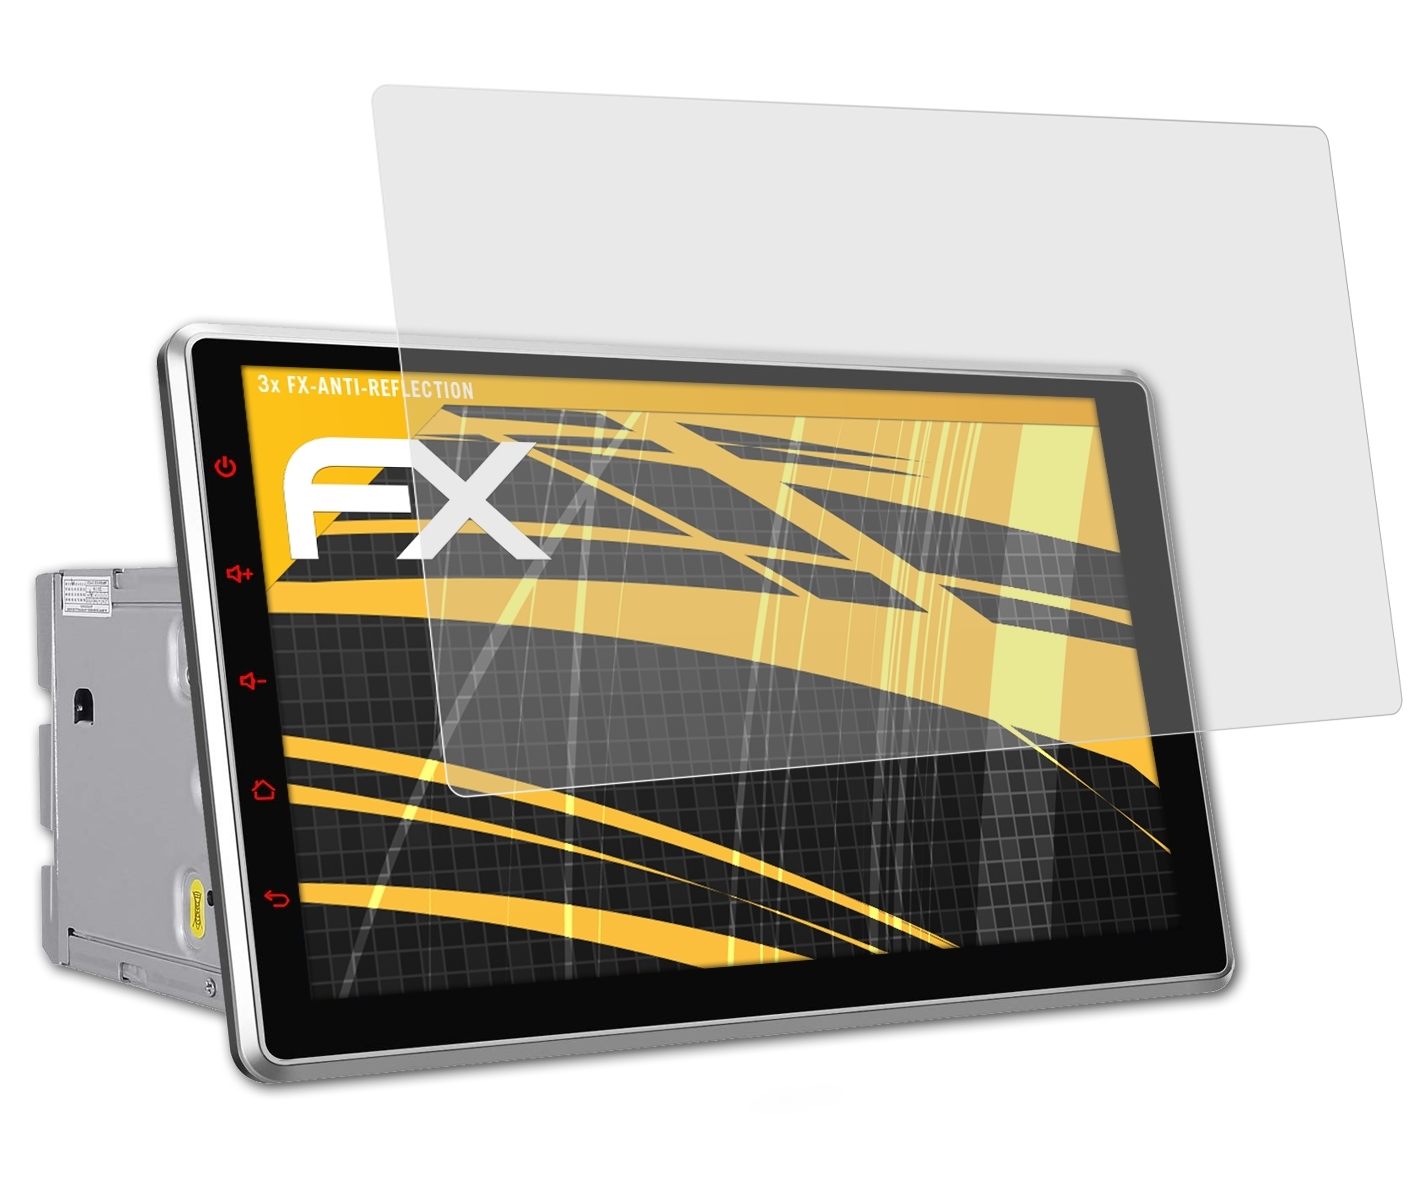 ATFOLIX 3x FX-Antireflex Displayschutz(für Inch 10.1 Pumpkin AA0412B (Universal))